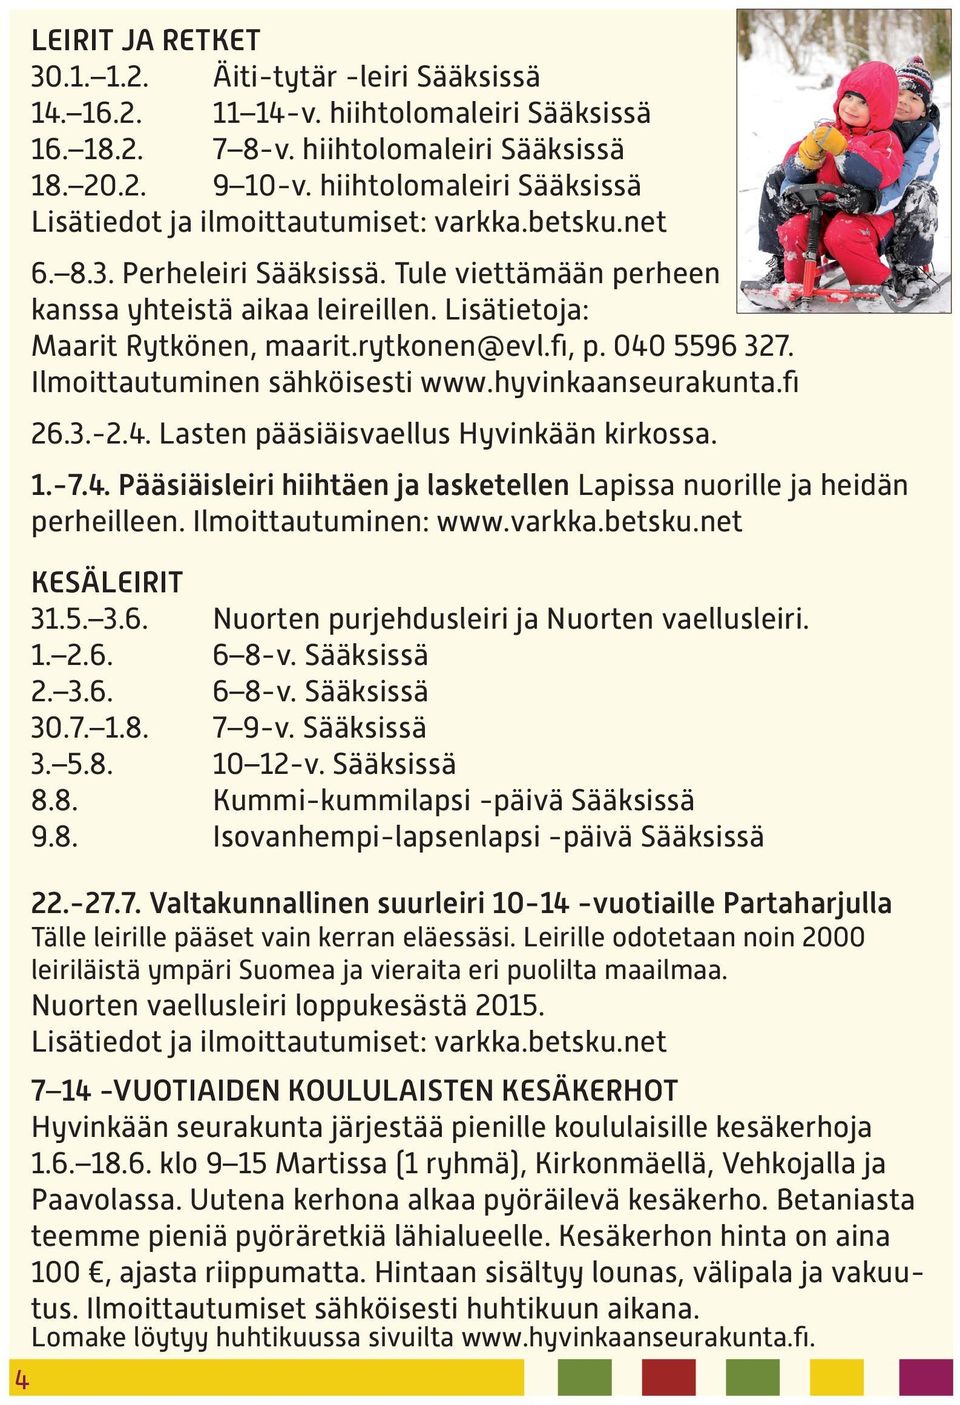 Lisätietoja: Maarit Rytkönen, maarit.rytkonen@evl.fi, p. 040 5596 327. Ilmoittautuminen sähköisesti www.hyvinkaanseurakunta.fi 26.3.-2.4. Lasten pääsiäisvaellus Hyvinkään kirkossa. 1.-7.4. Pääsiäisleiri hiihtäen ja lasketellen Lapissa nuorille ja heidän perheilleen.